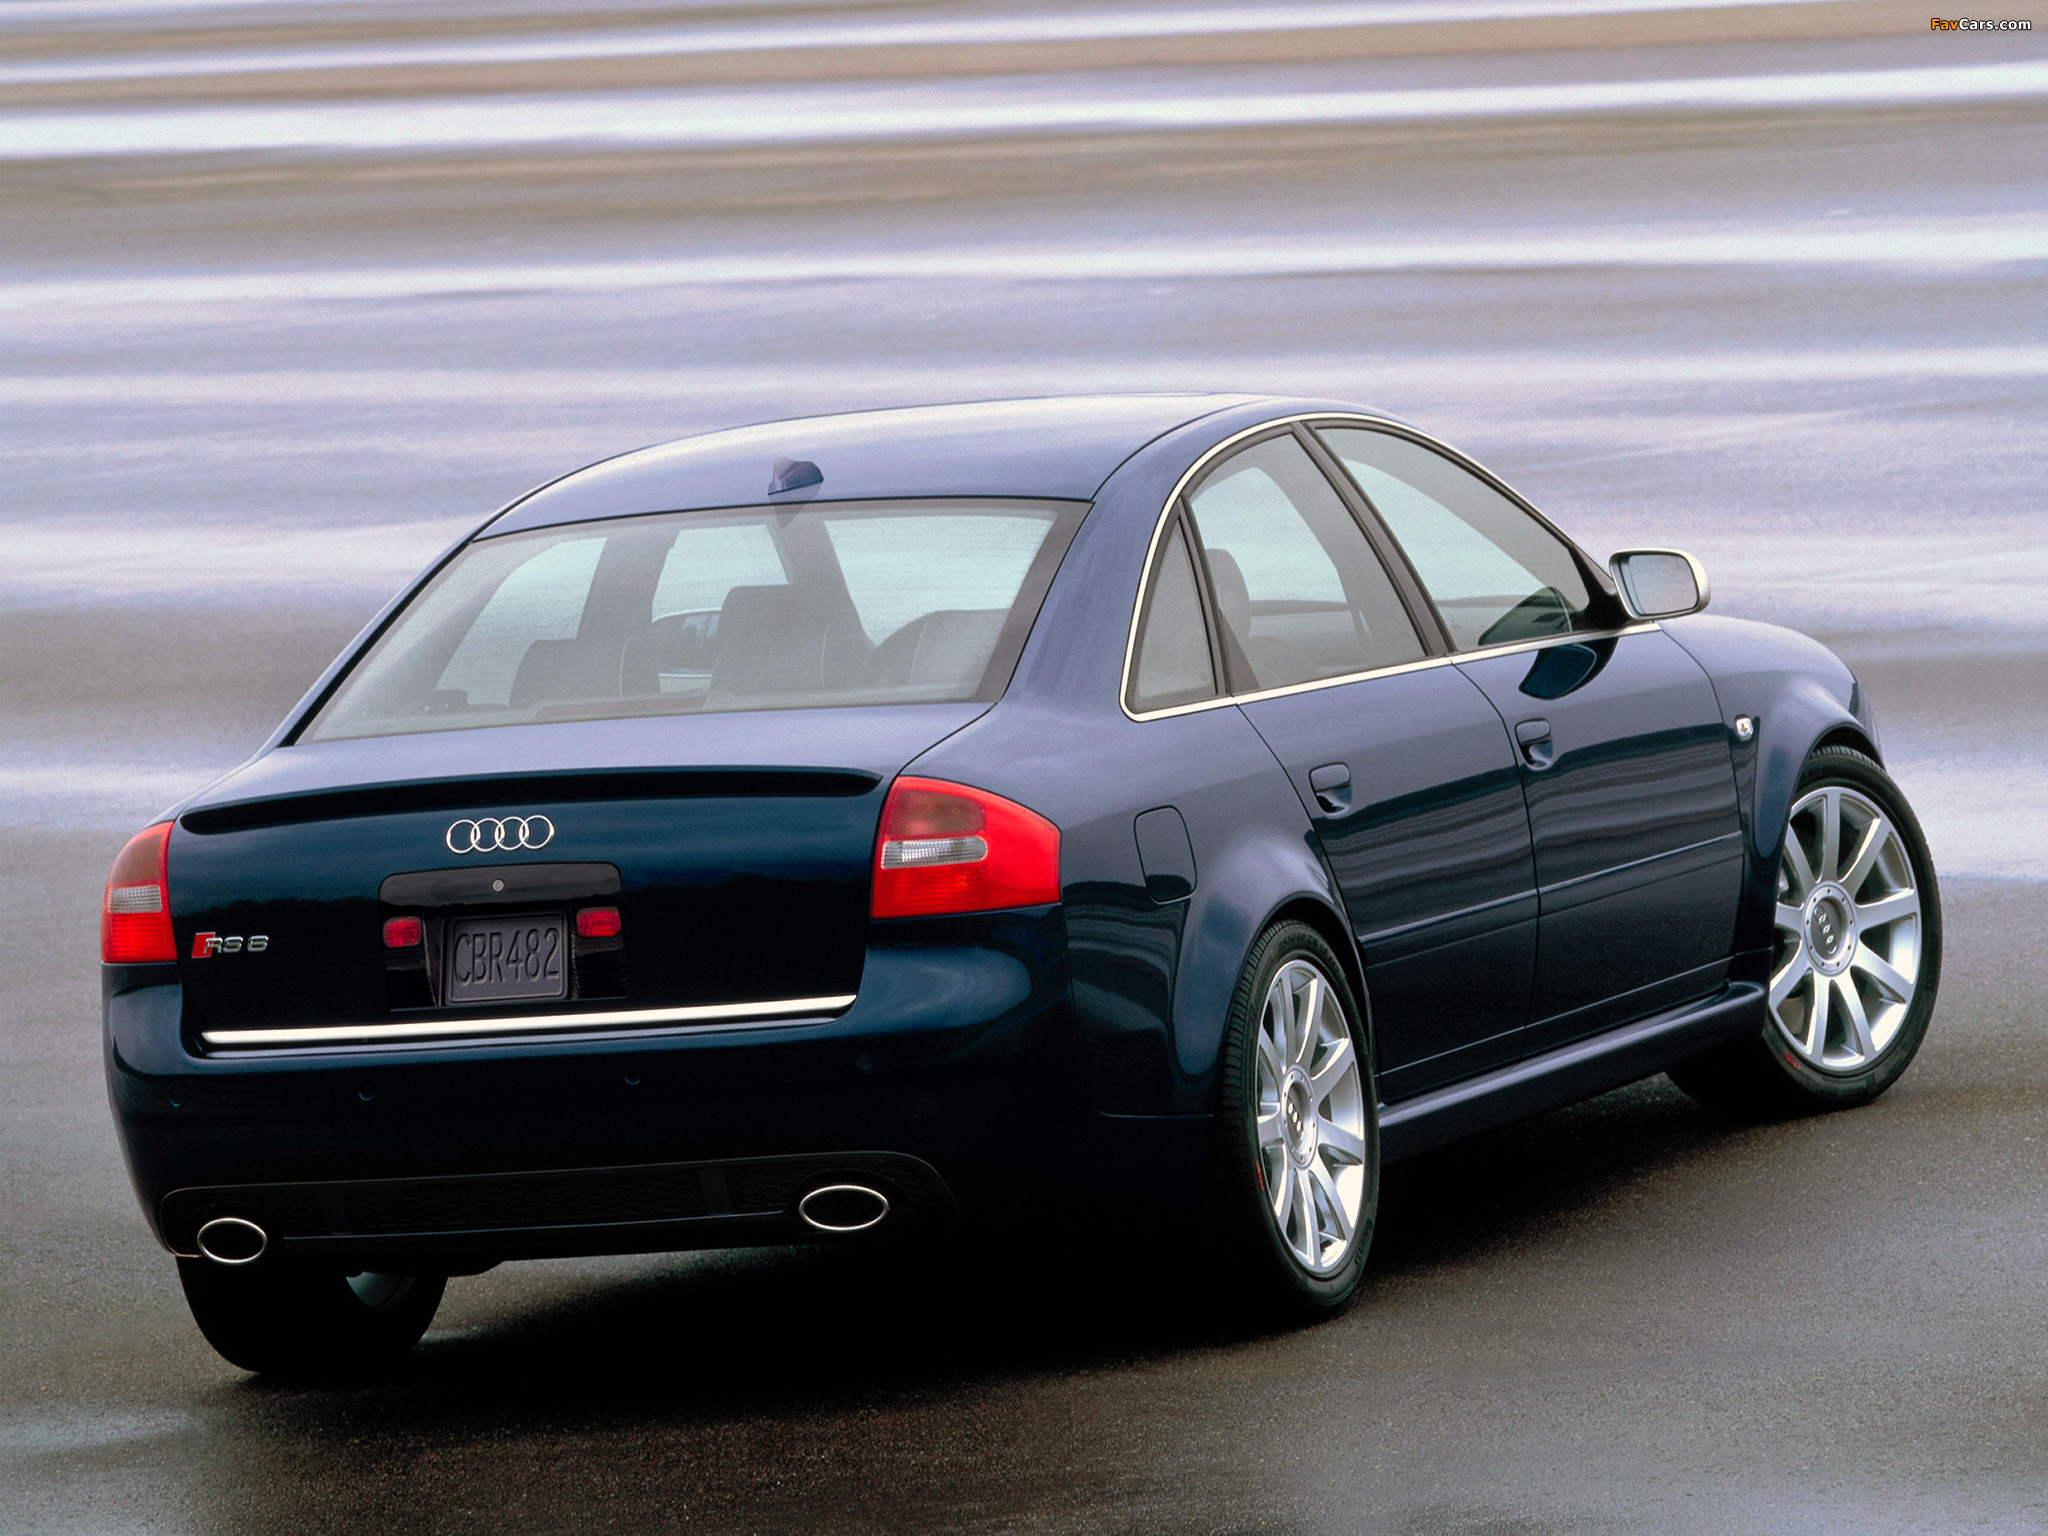 Автомобиль a6. Audi a6 c5. Audi rs6 c5. Audi rs6 2002. Audi a6 rs6 c5.